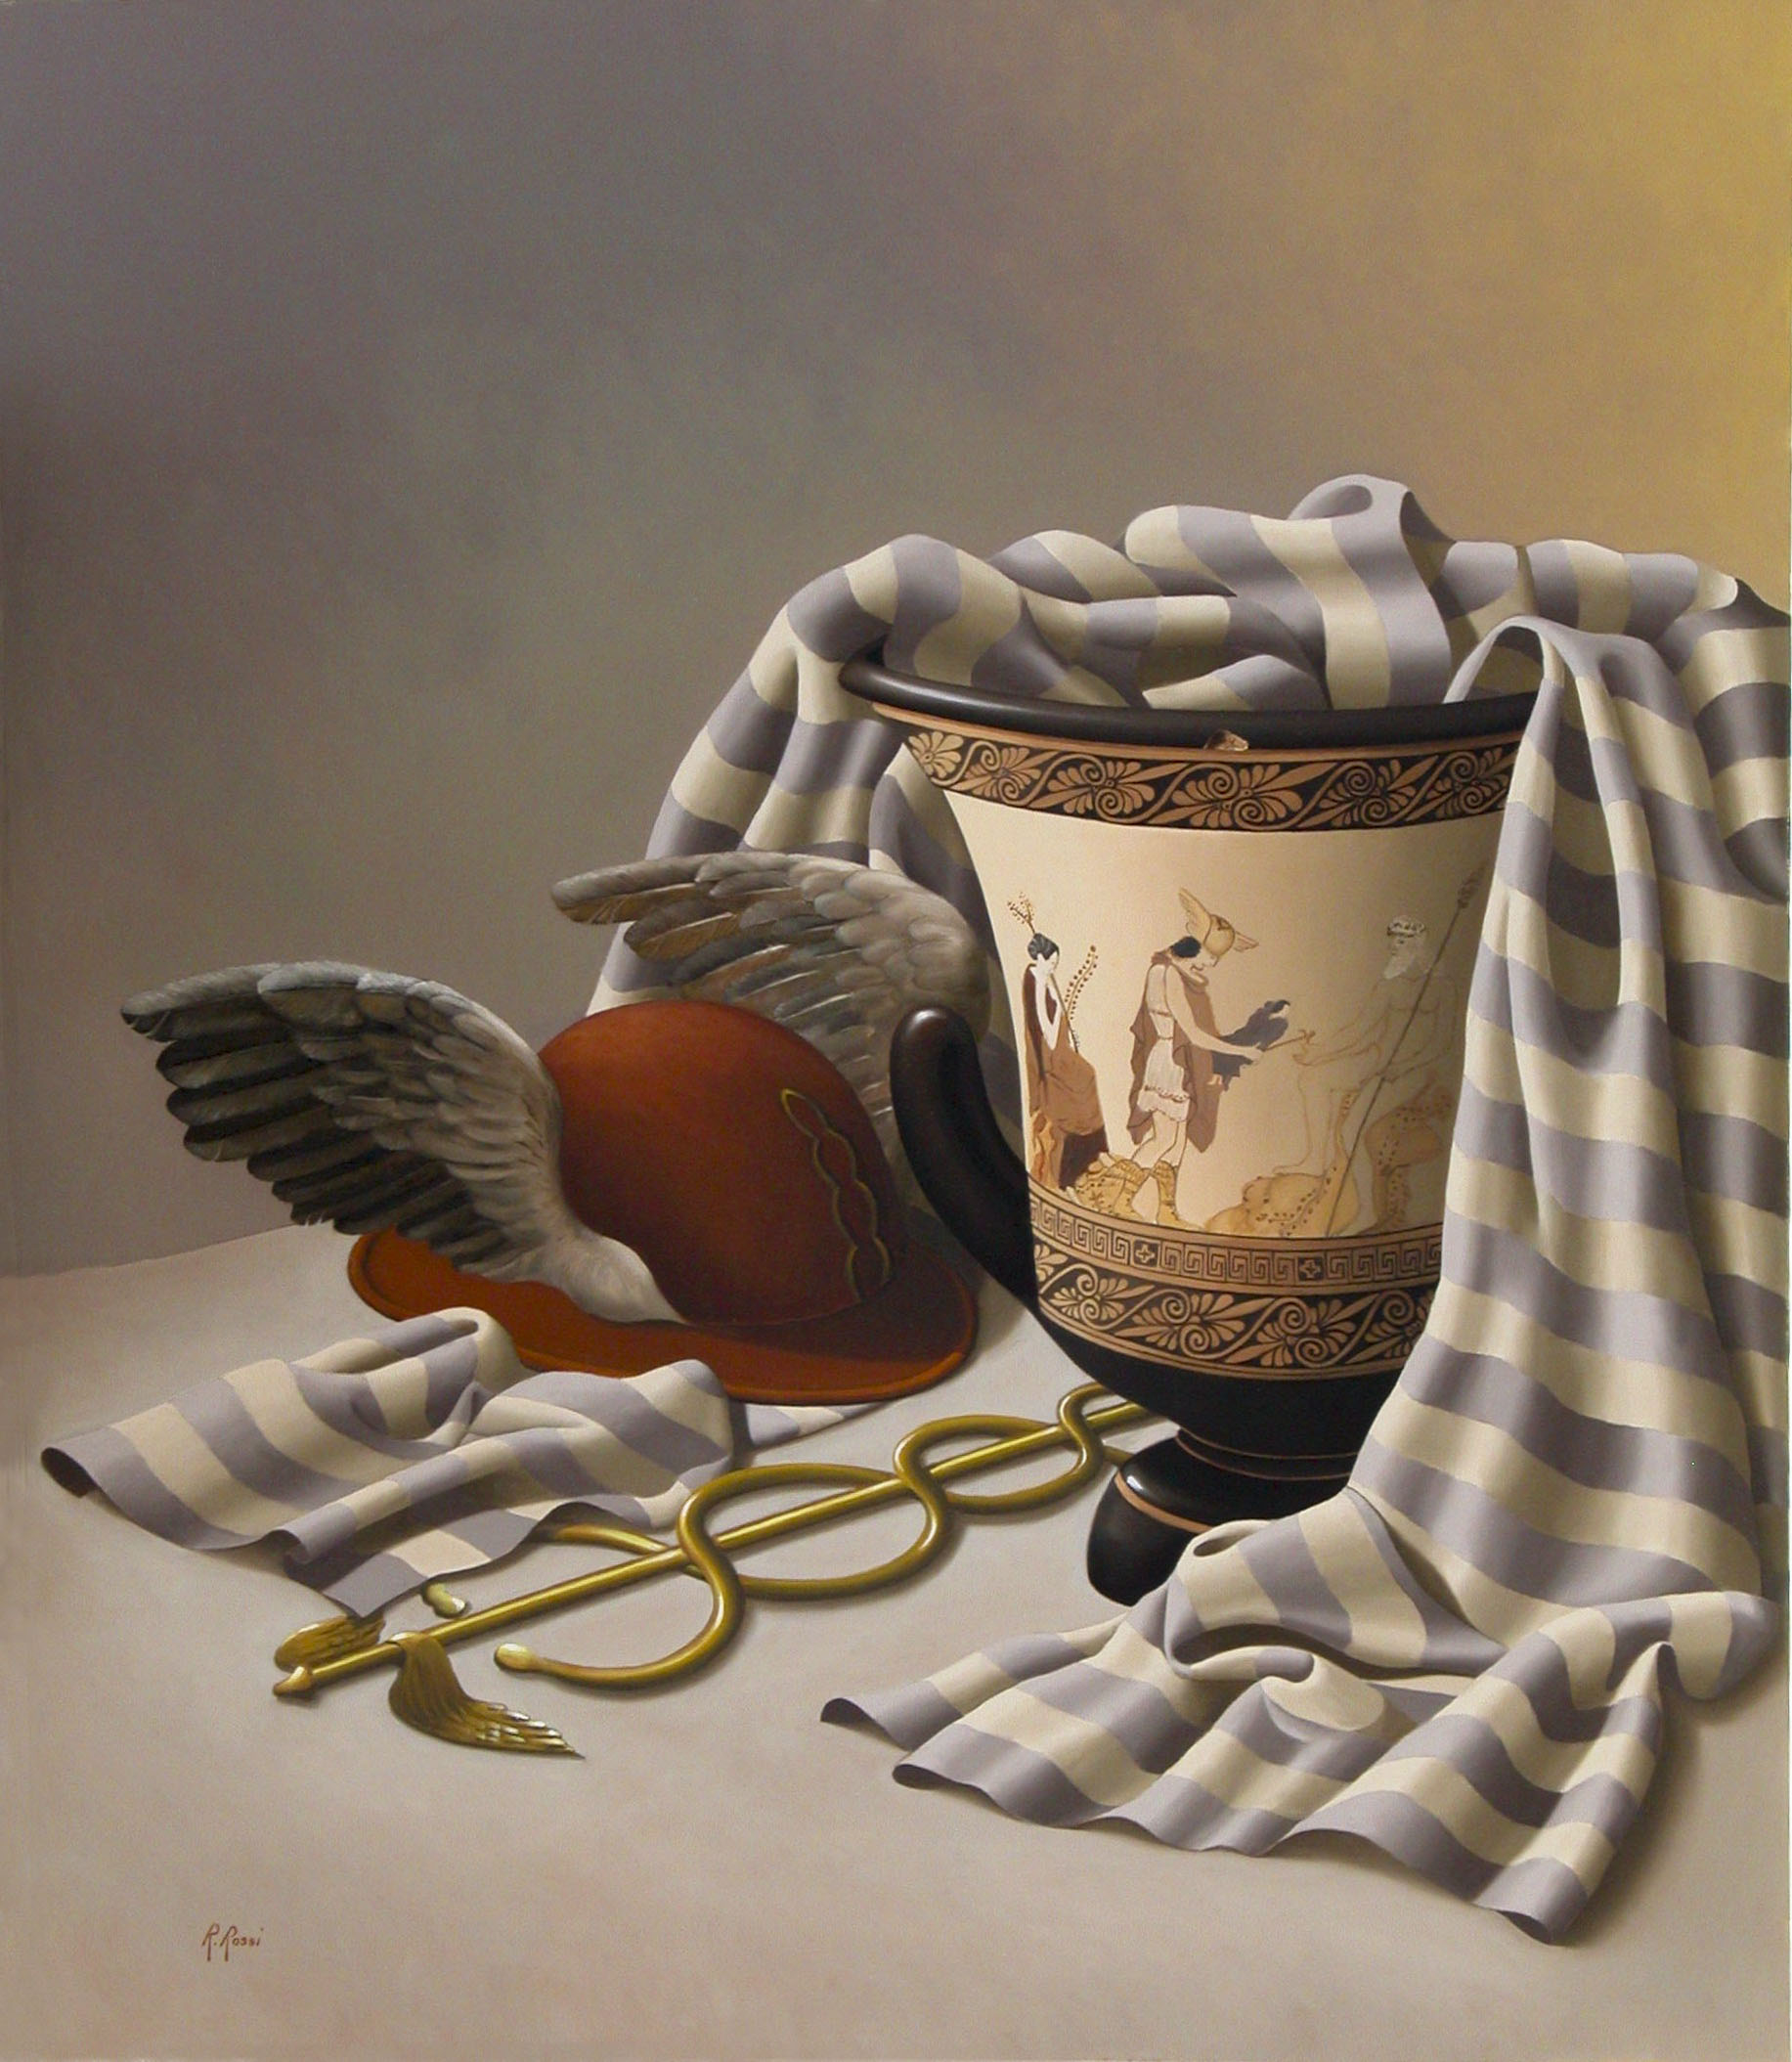 2008 roberta rossi – Le ali di Hermes – olio su tela – 70 x 60